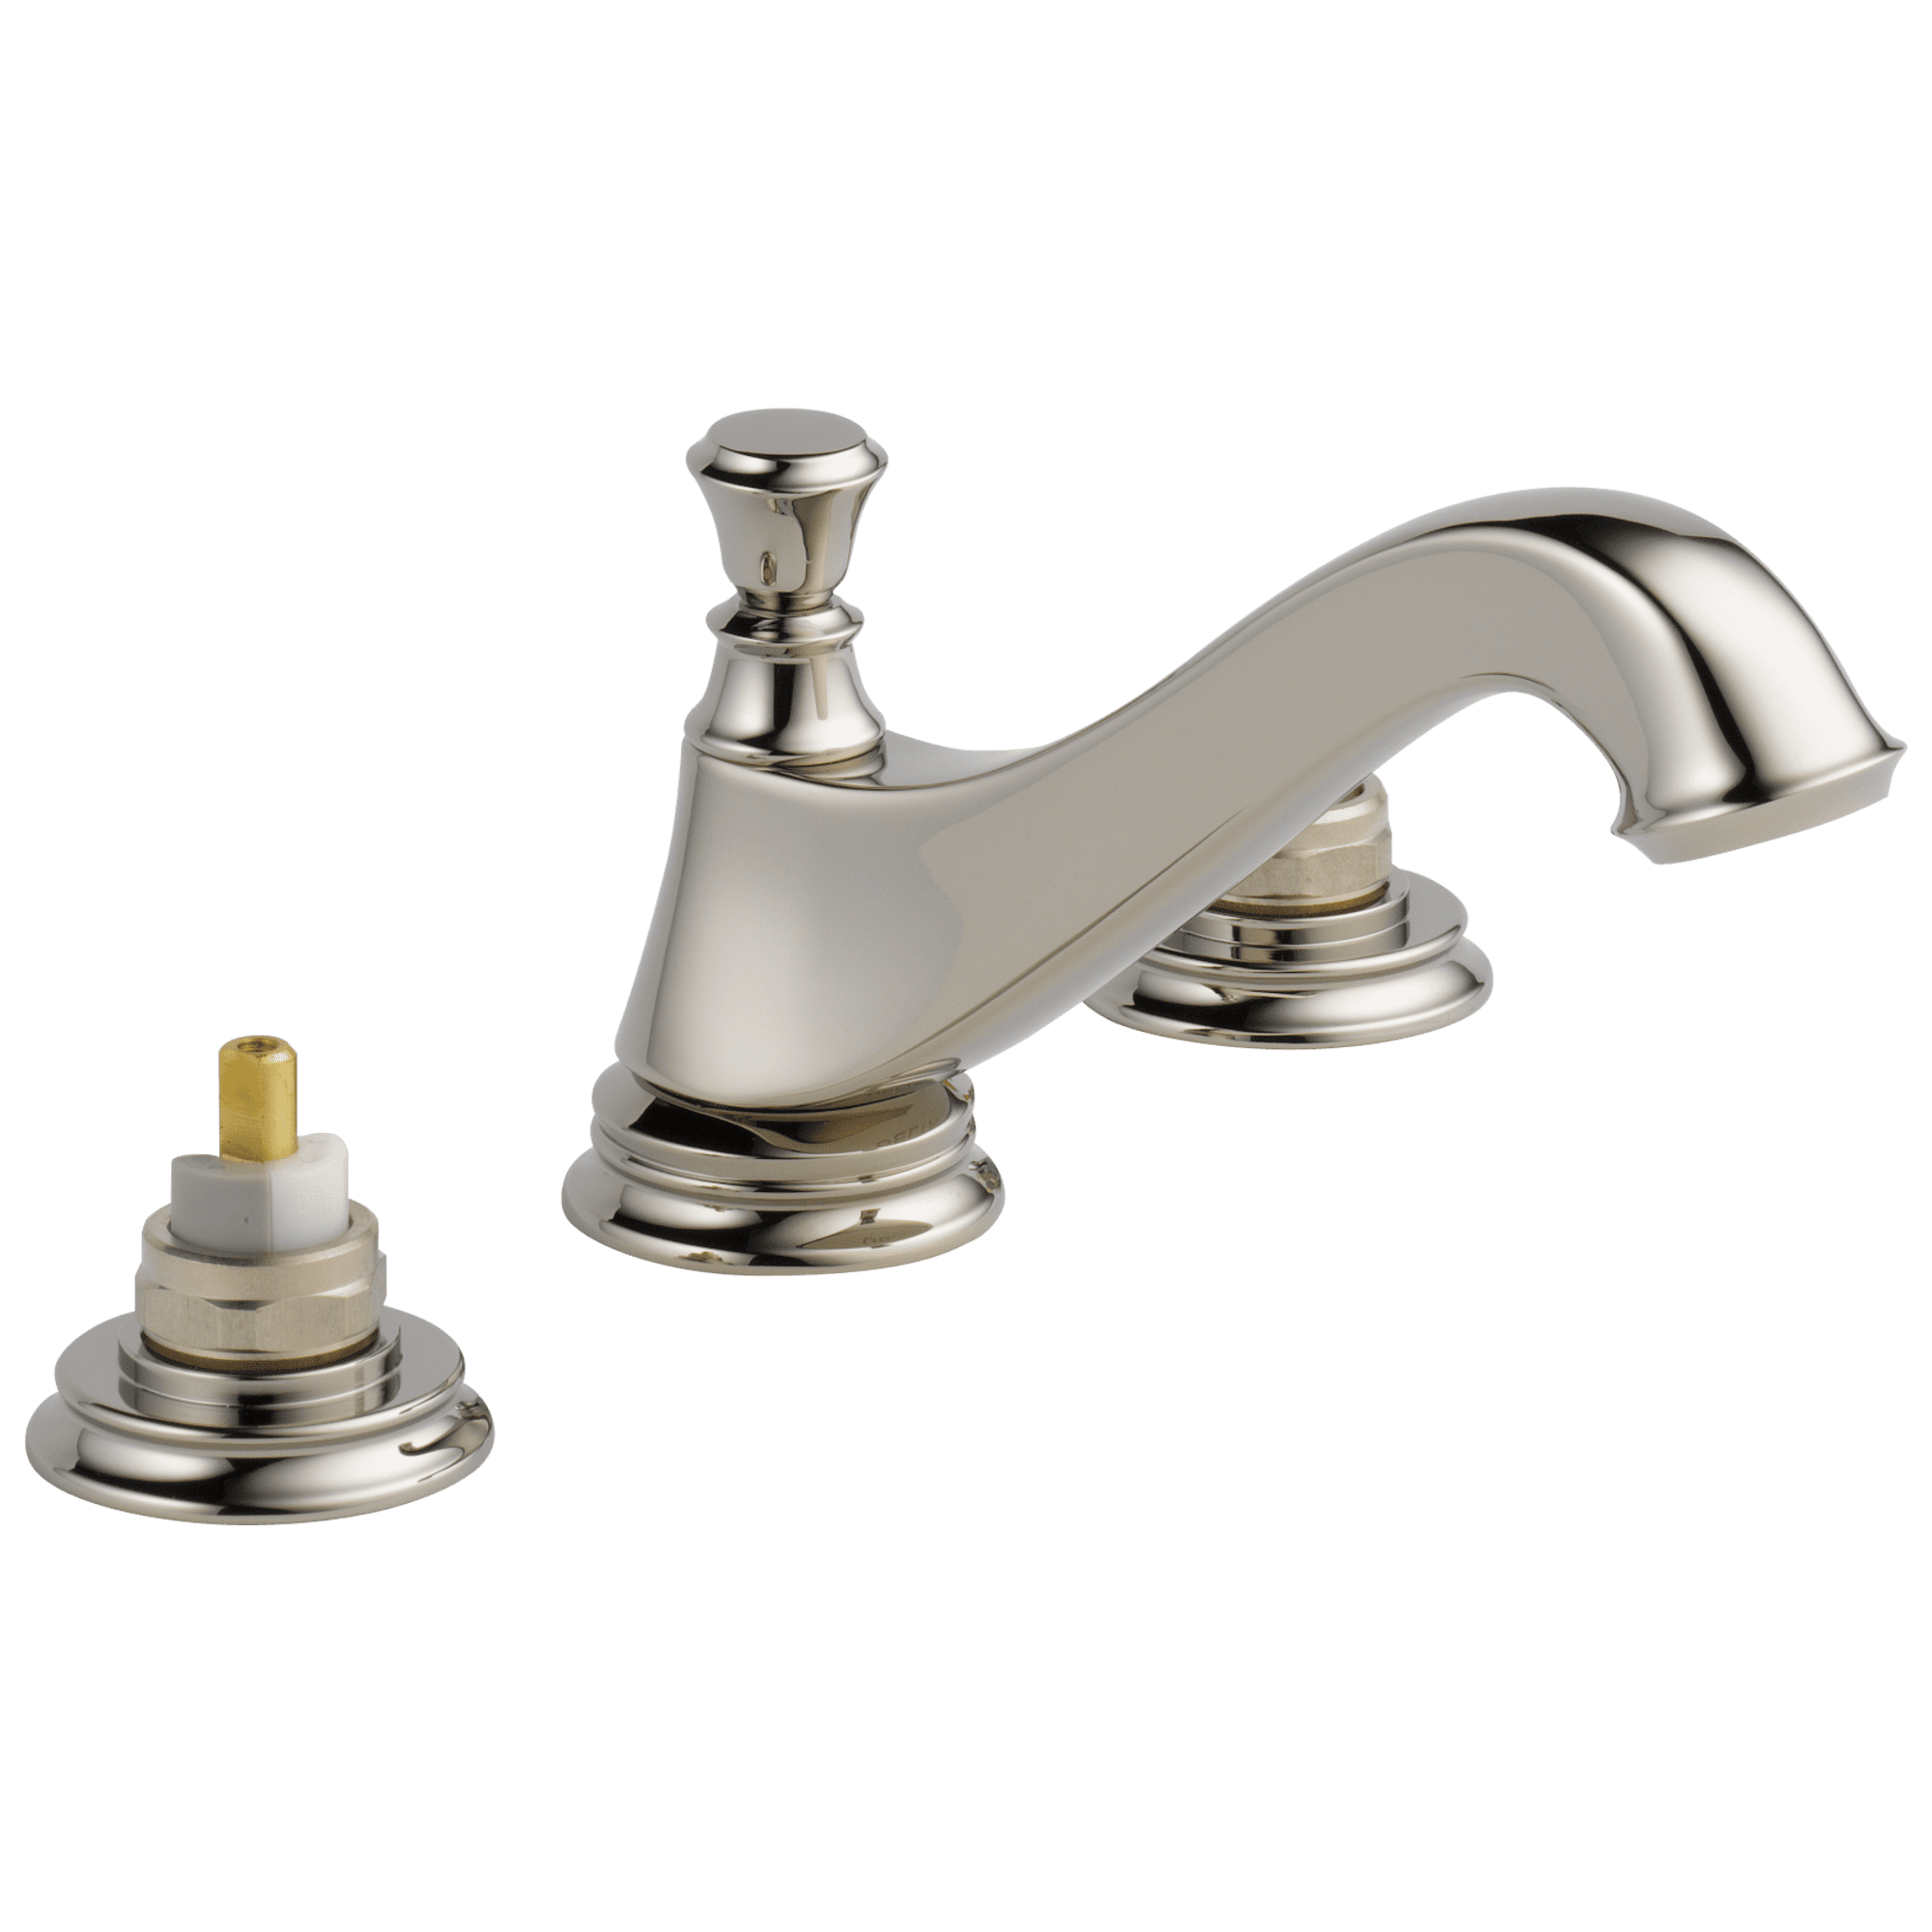 Two Handle Widespread Bathroom Faucet, Delta Brushed Nickel Bathroom Faucet Widespread